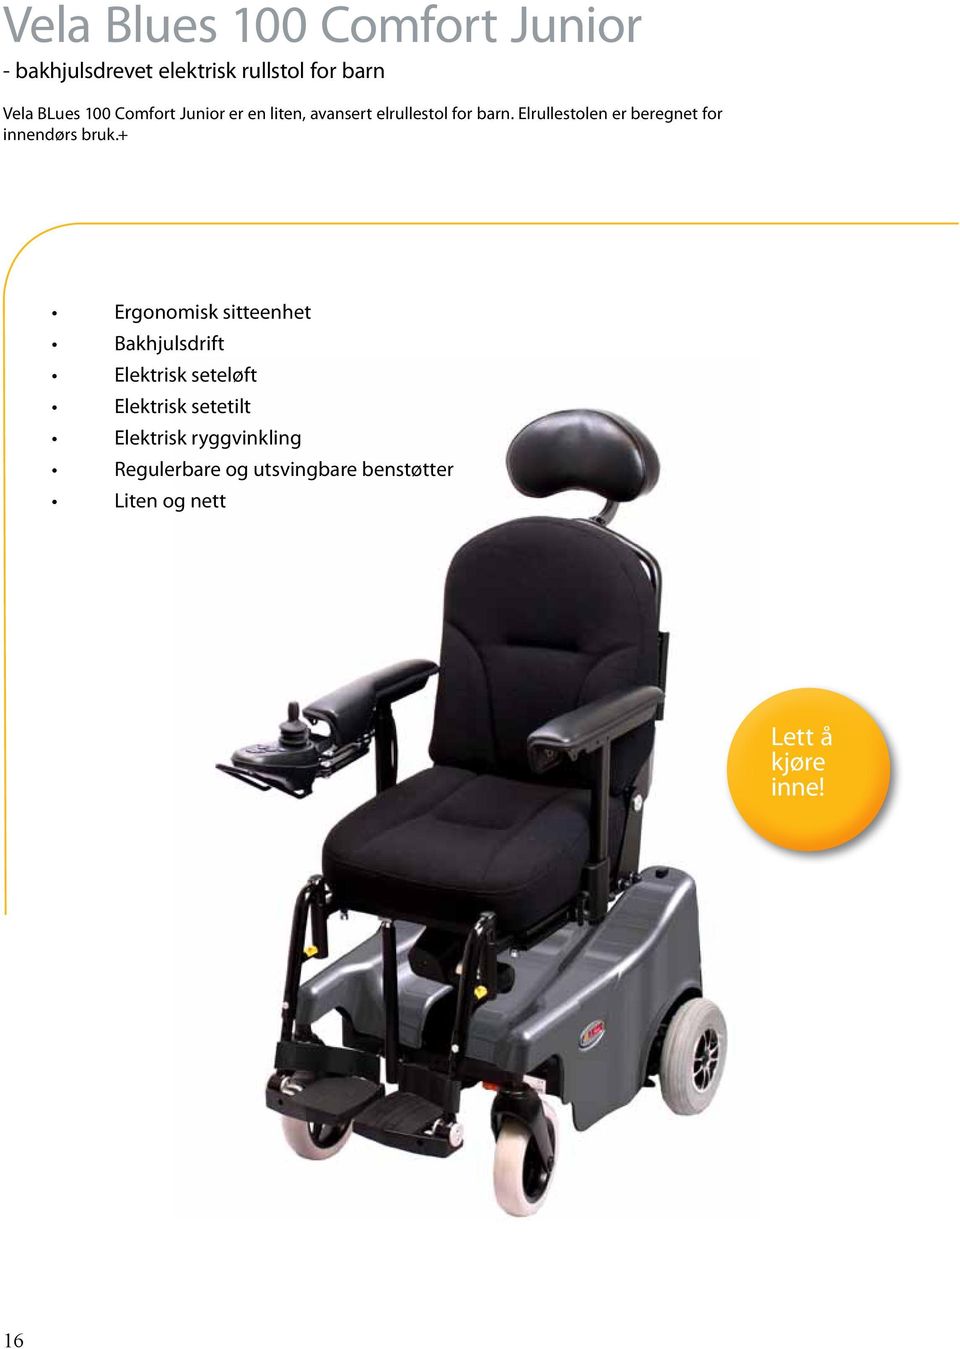 Elrullestolen er beregnet for innendørs bruk.